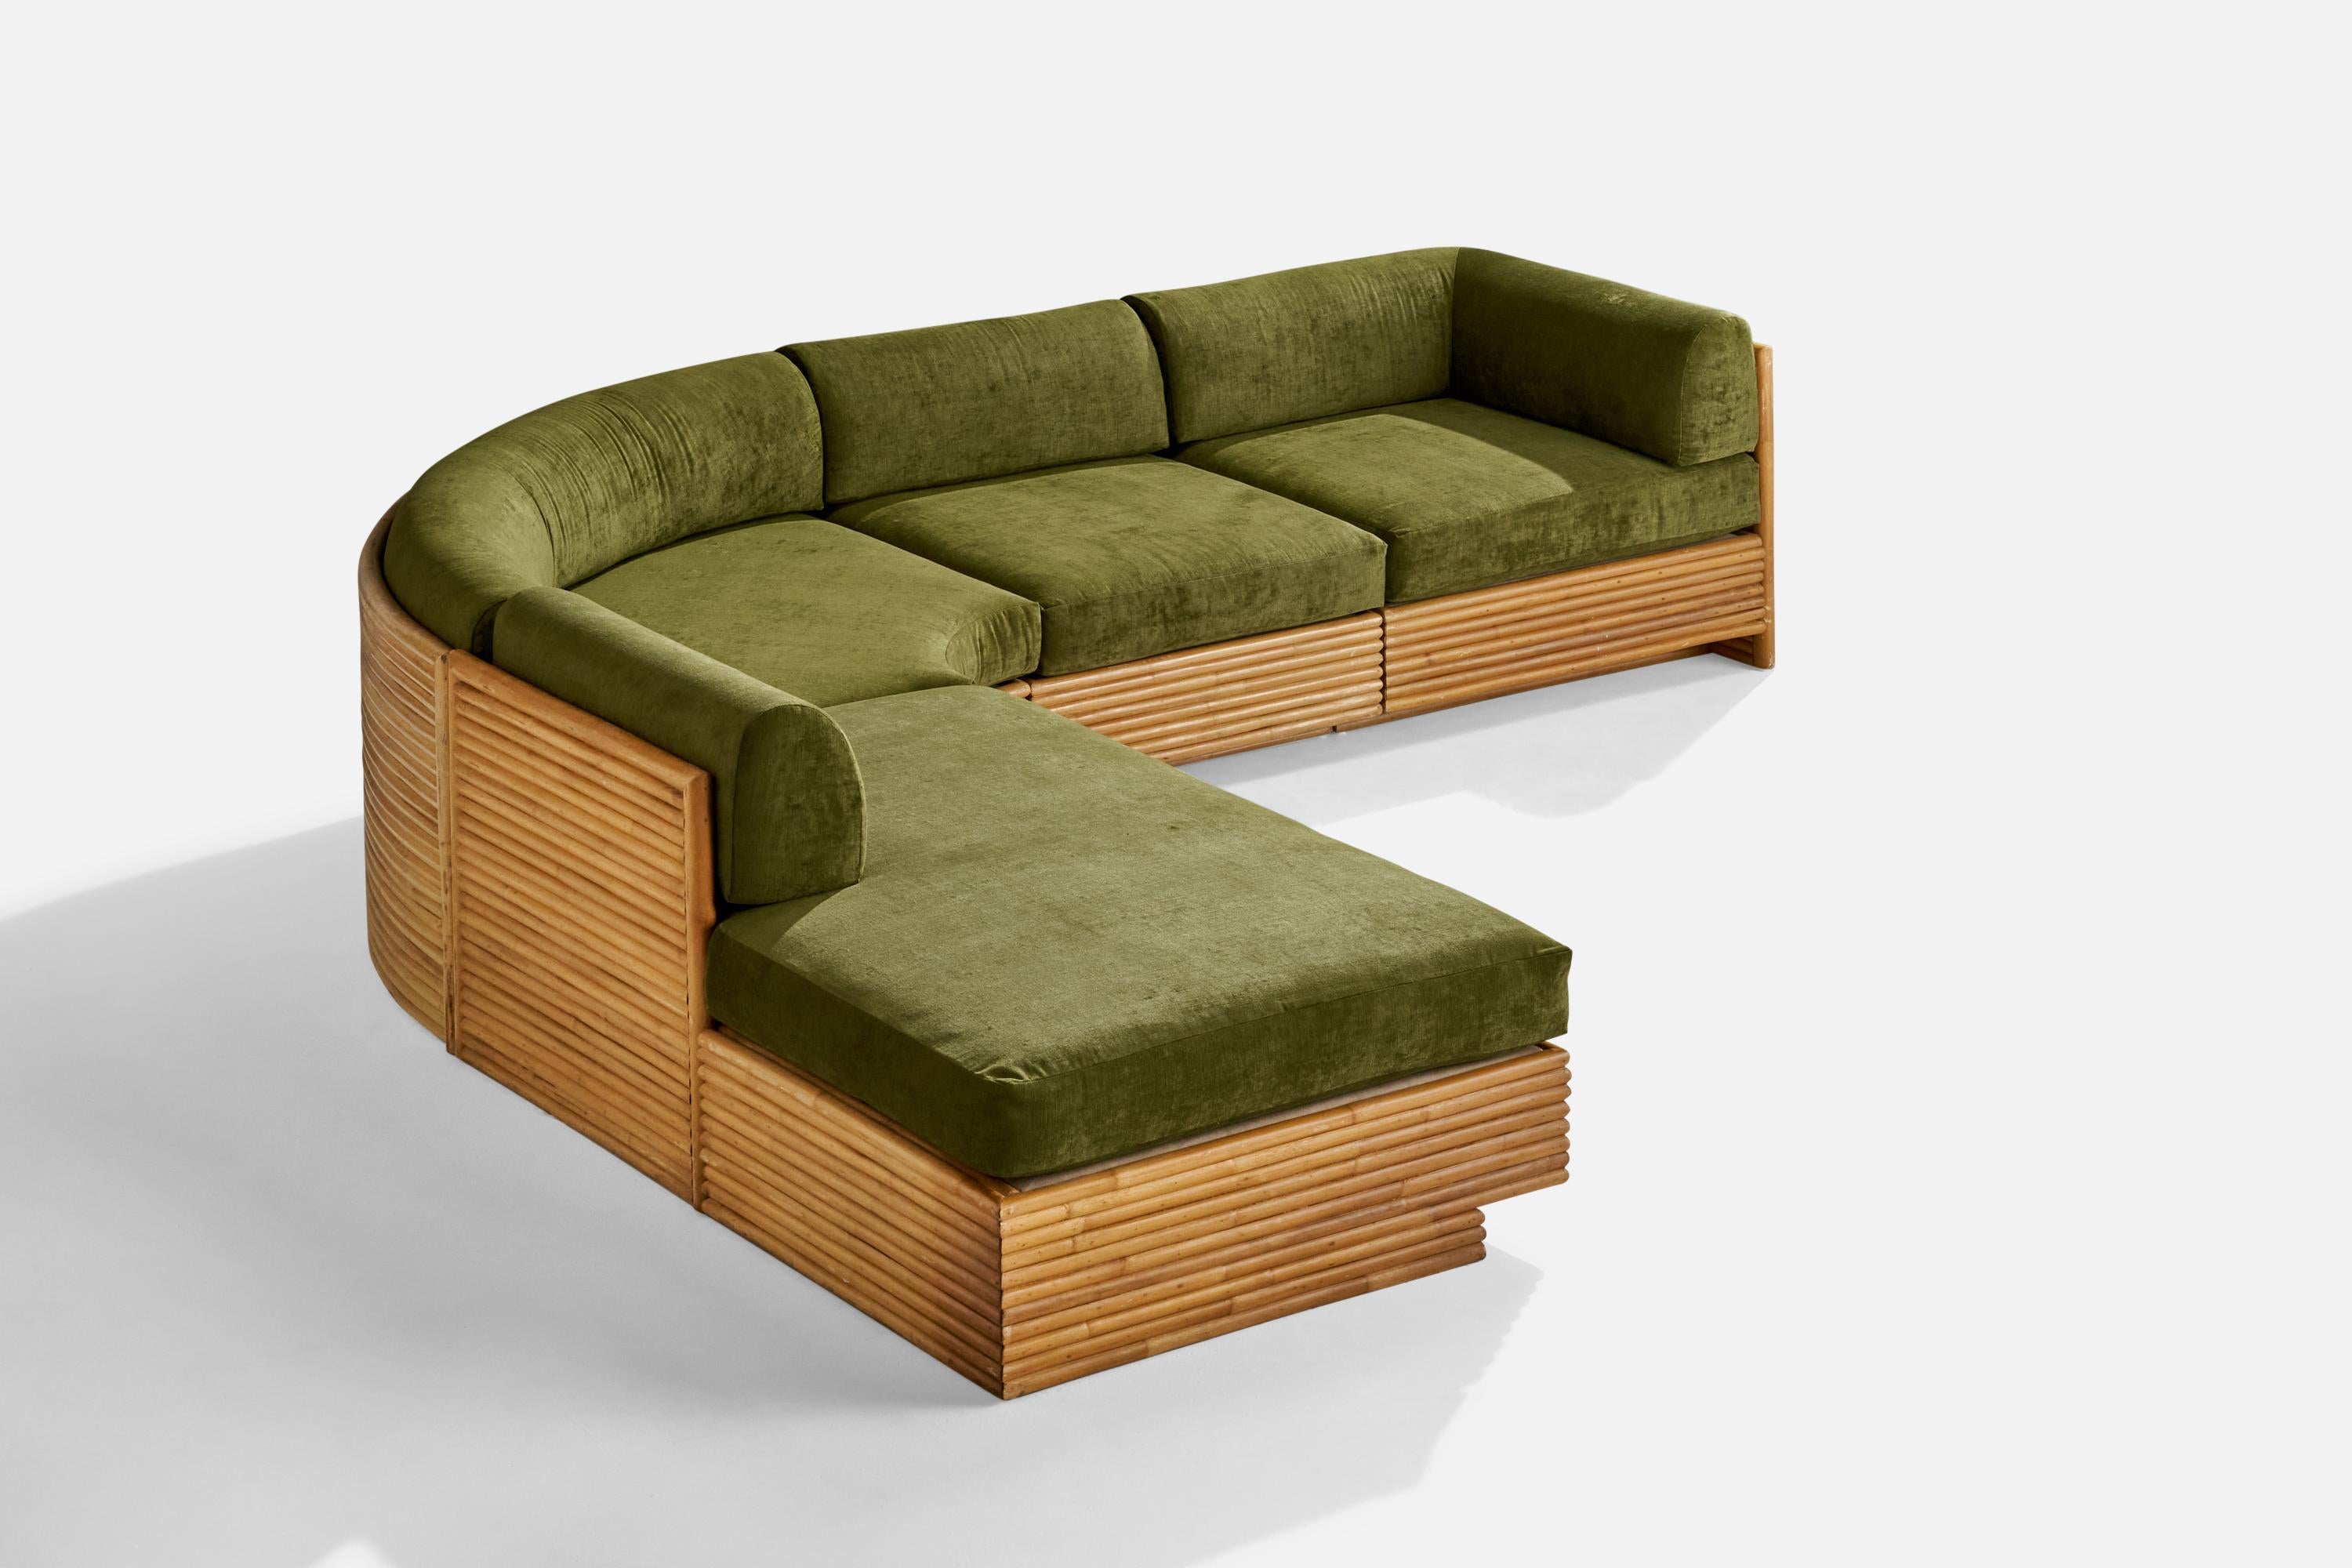 Ein Sektionssofa aus Bambus und grünem Samt, entworfen und hergestellt von Directional Furniture, USA, 1970er Jahre.

Sitzhöhe 18